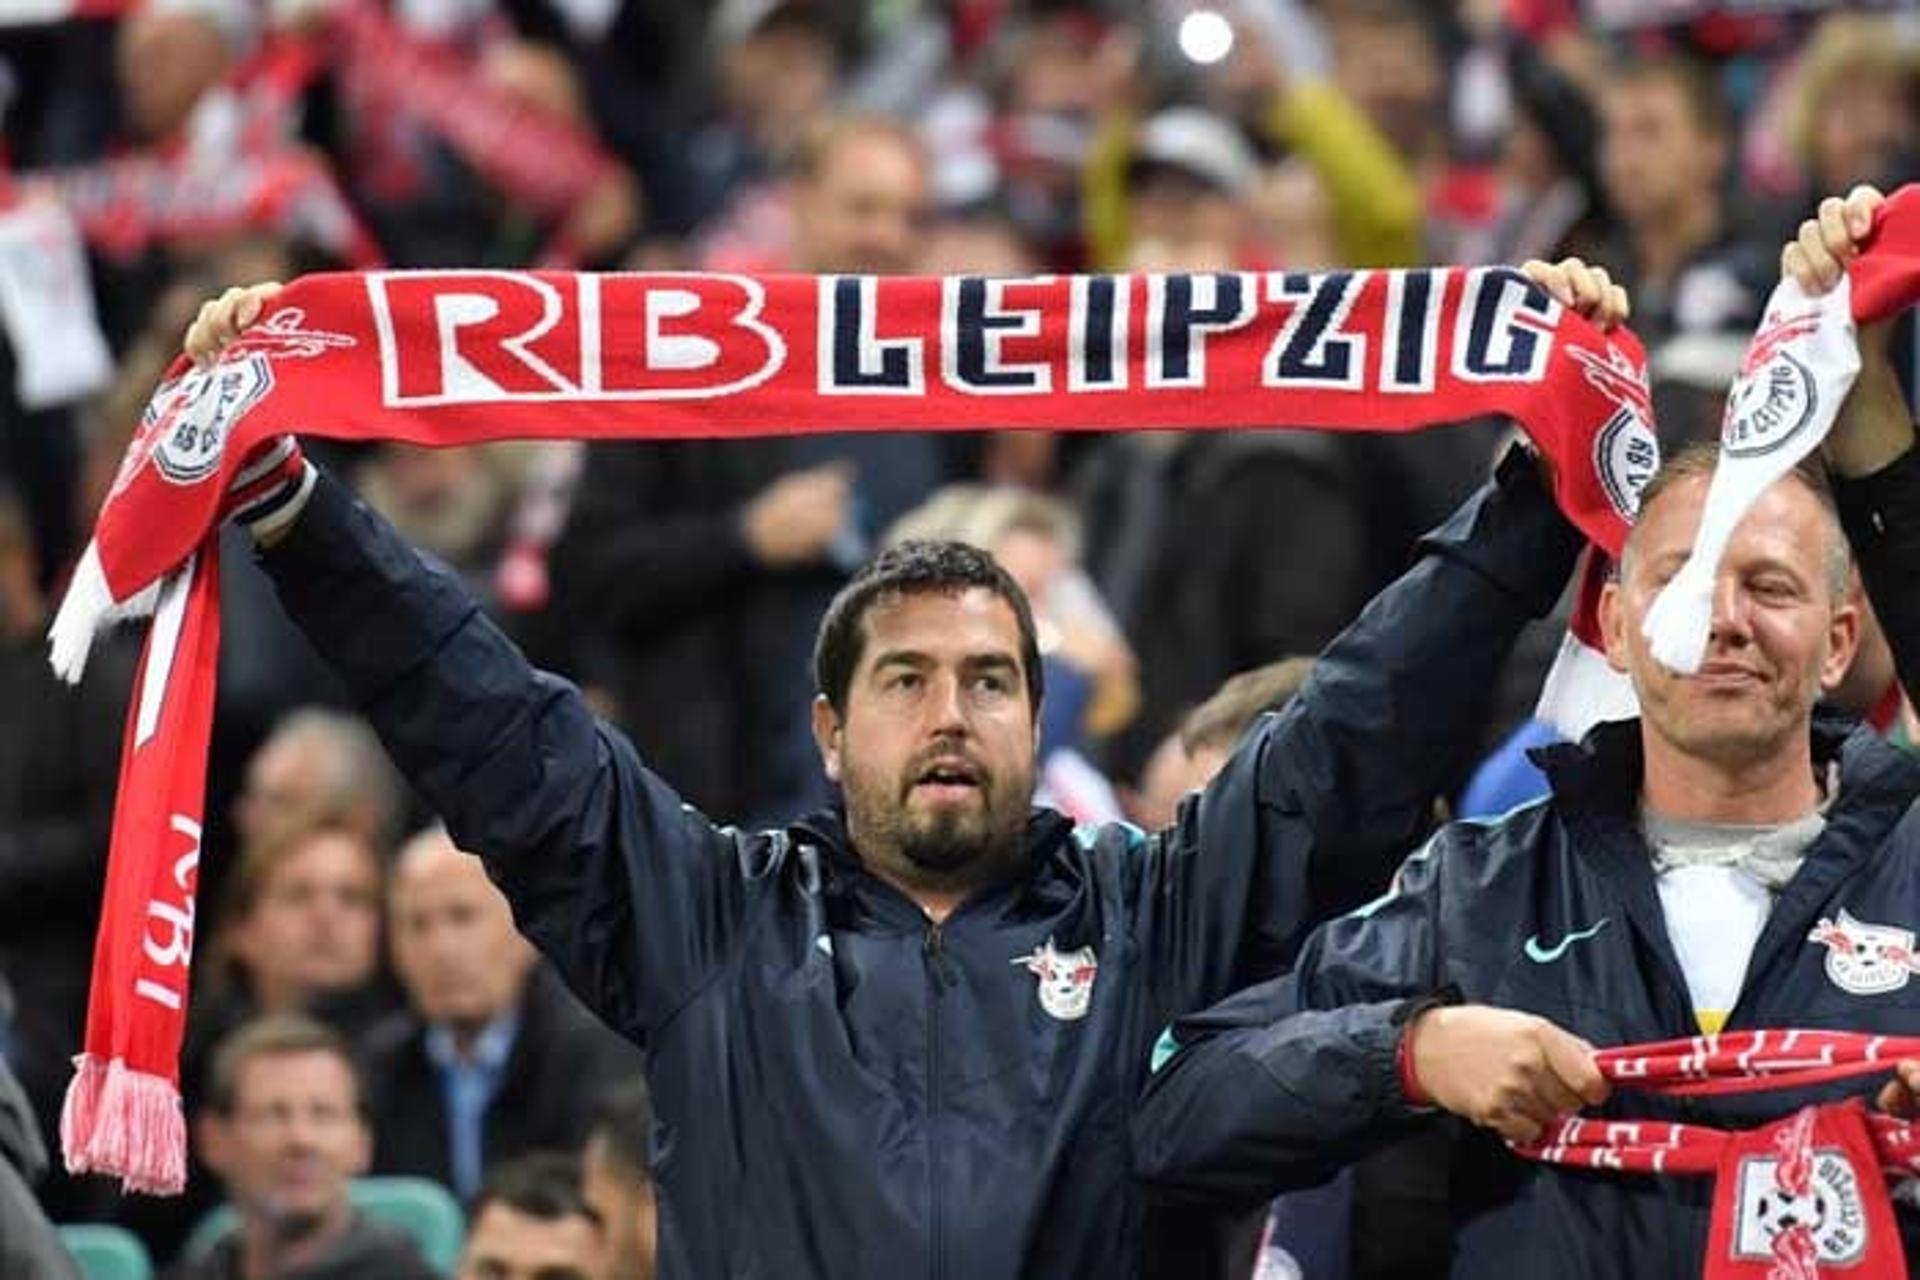 Valeu pela festa da torcida do Leipzig, que pela primeira vez disputa a fase de grupos da Champions League